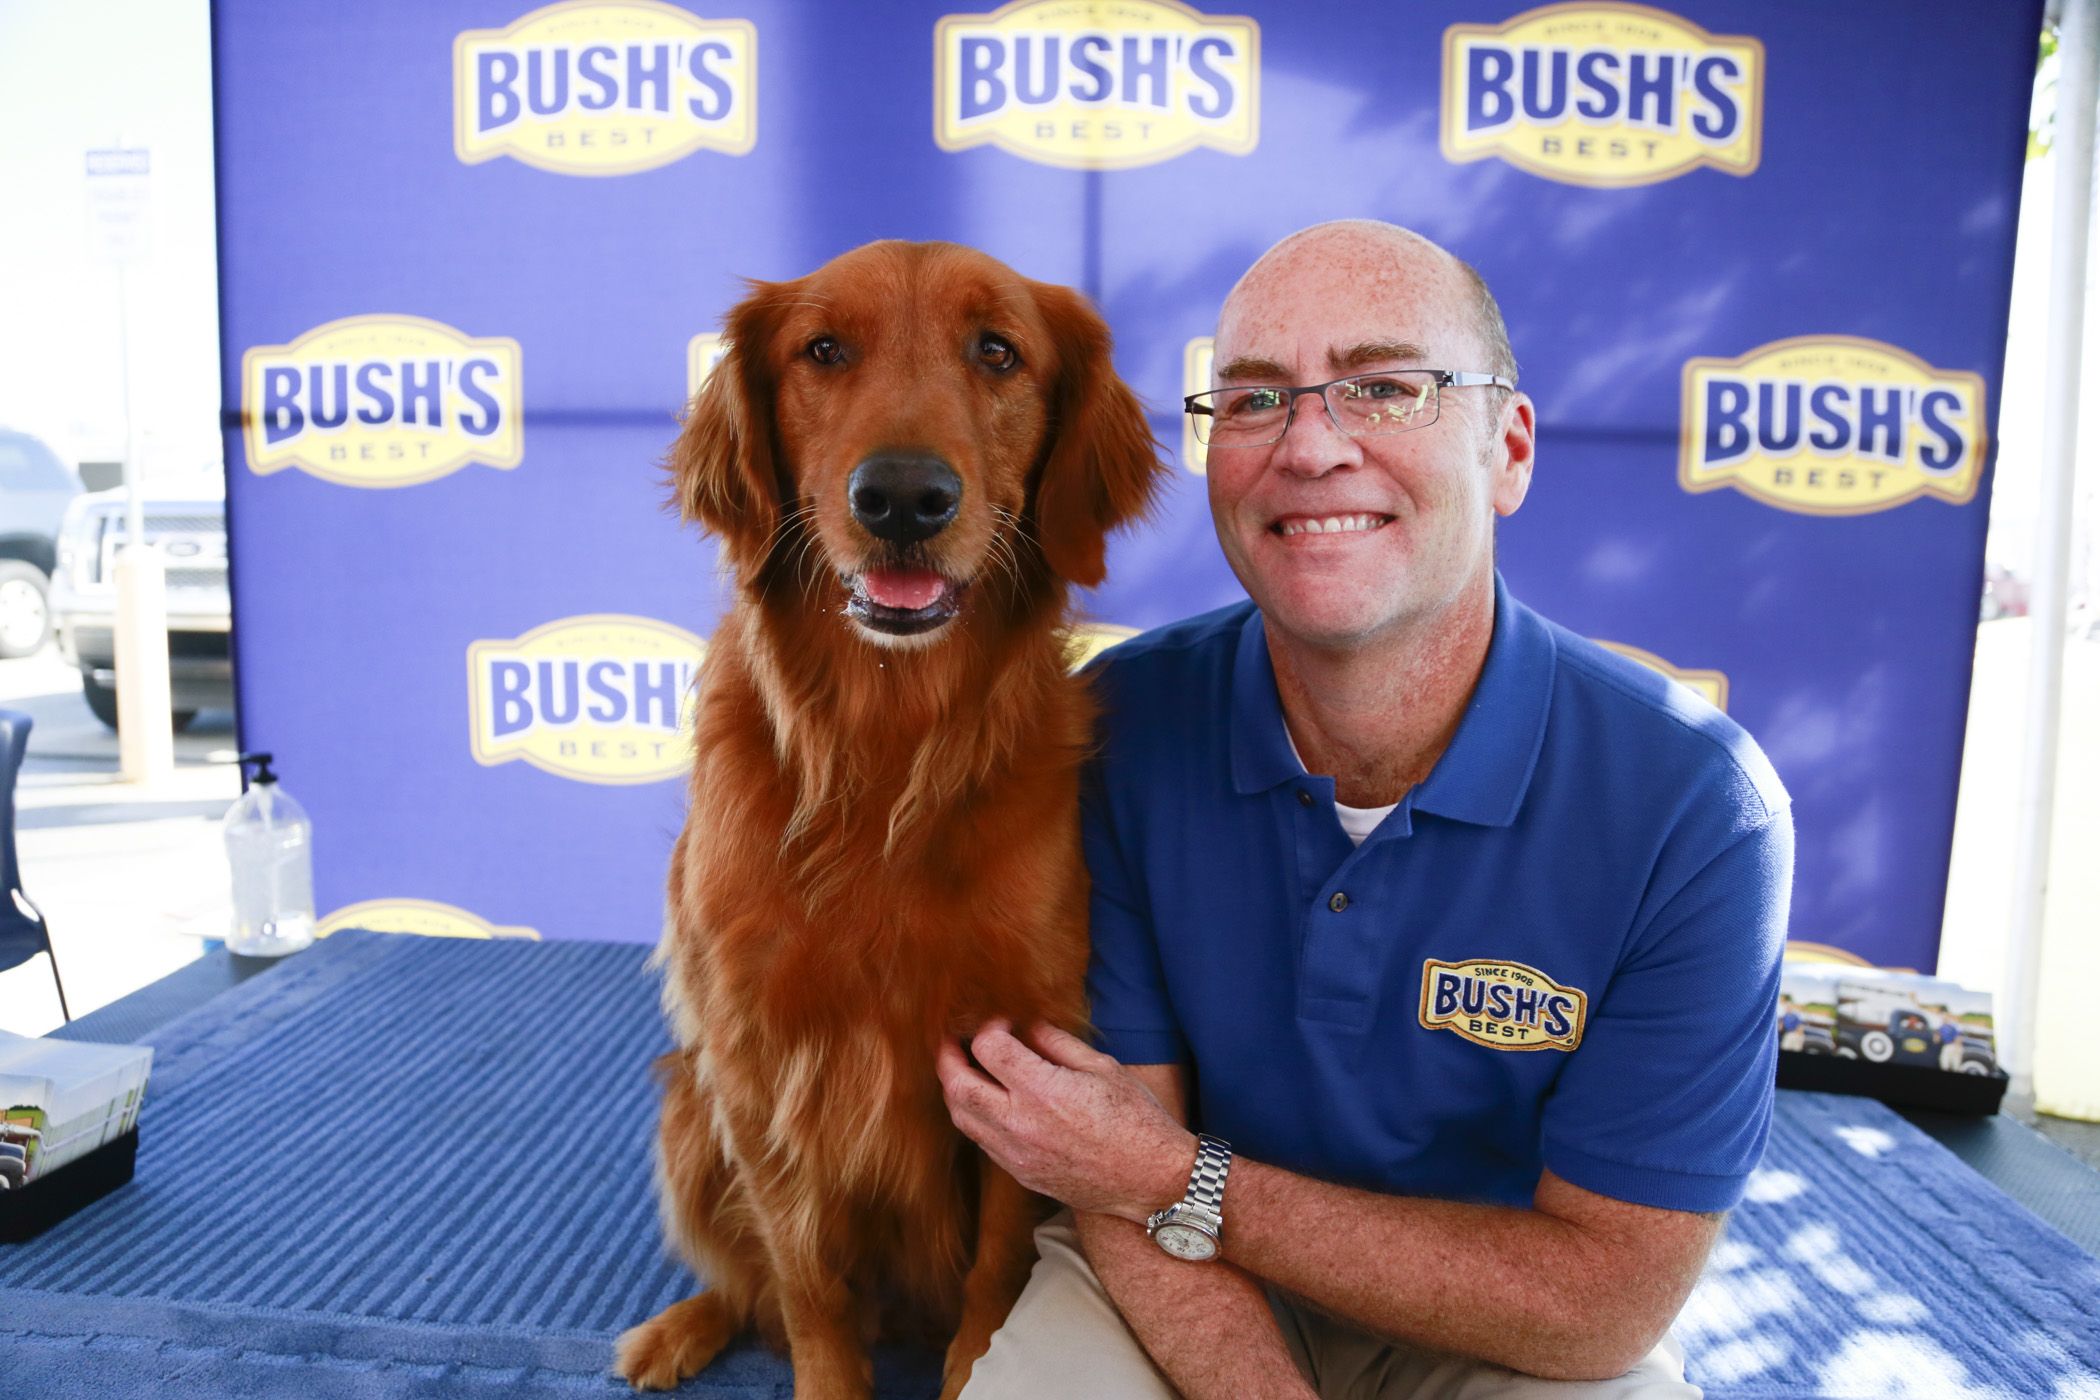 "Duke" Bush's Baked Beans Dog Dies